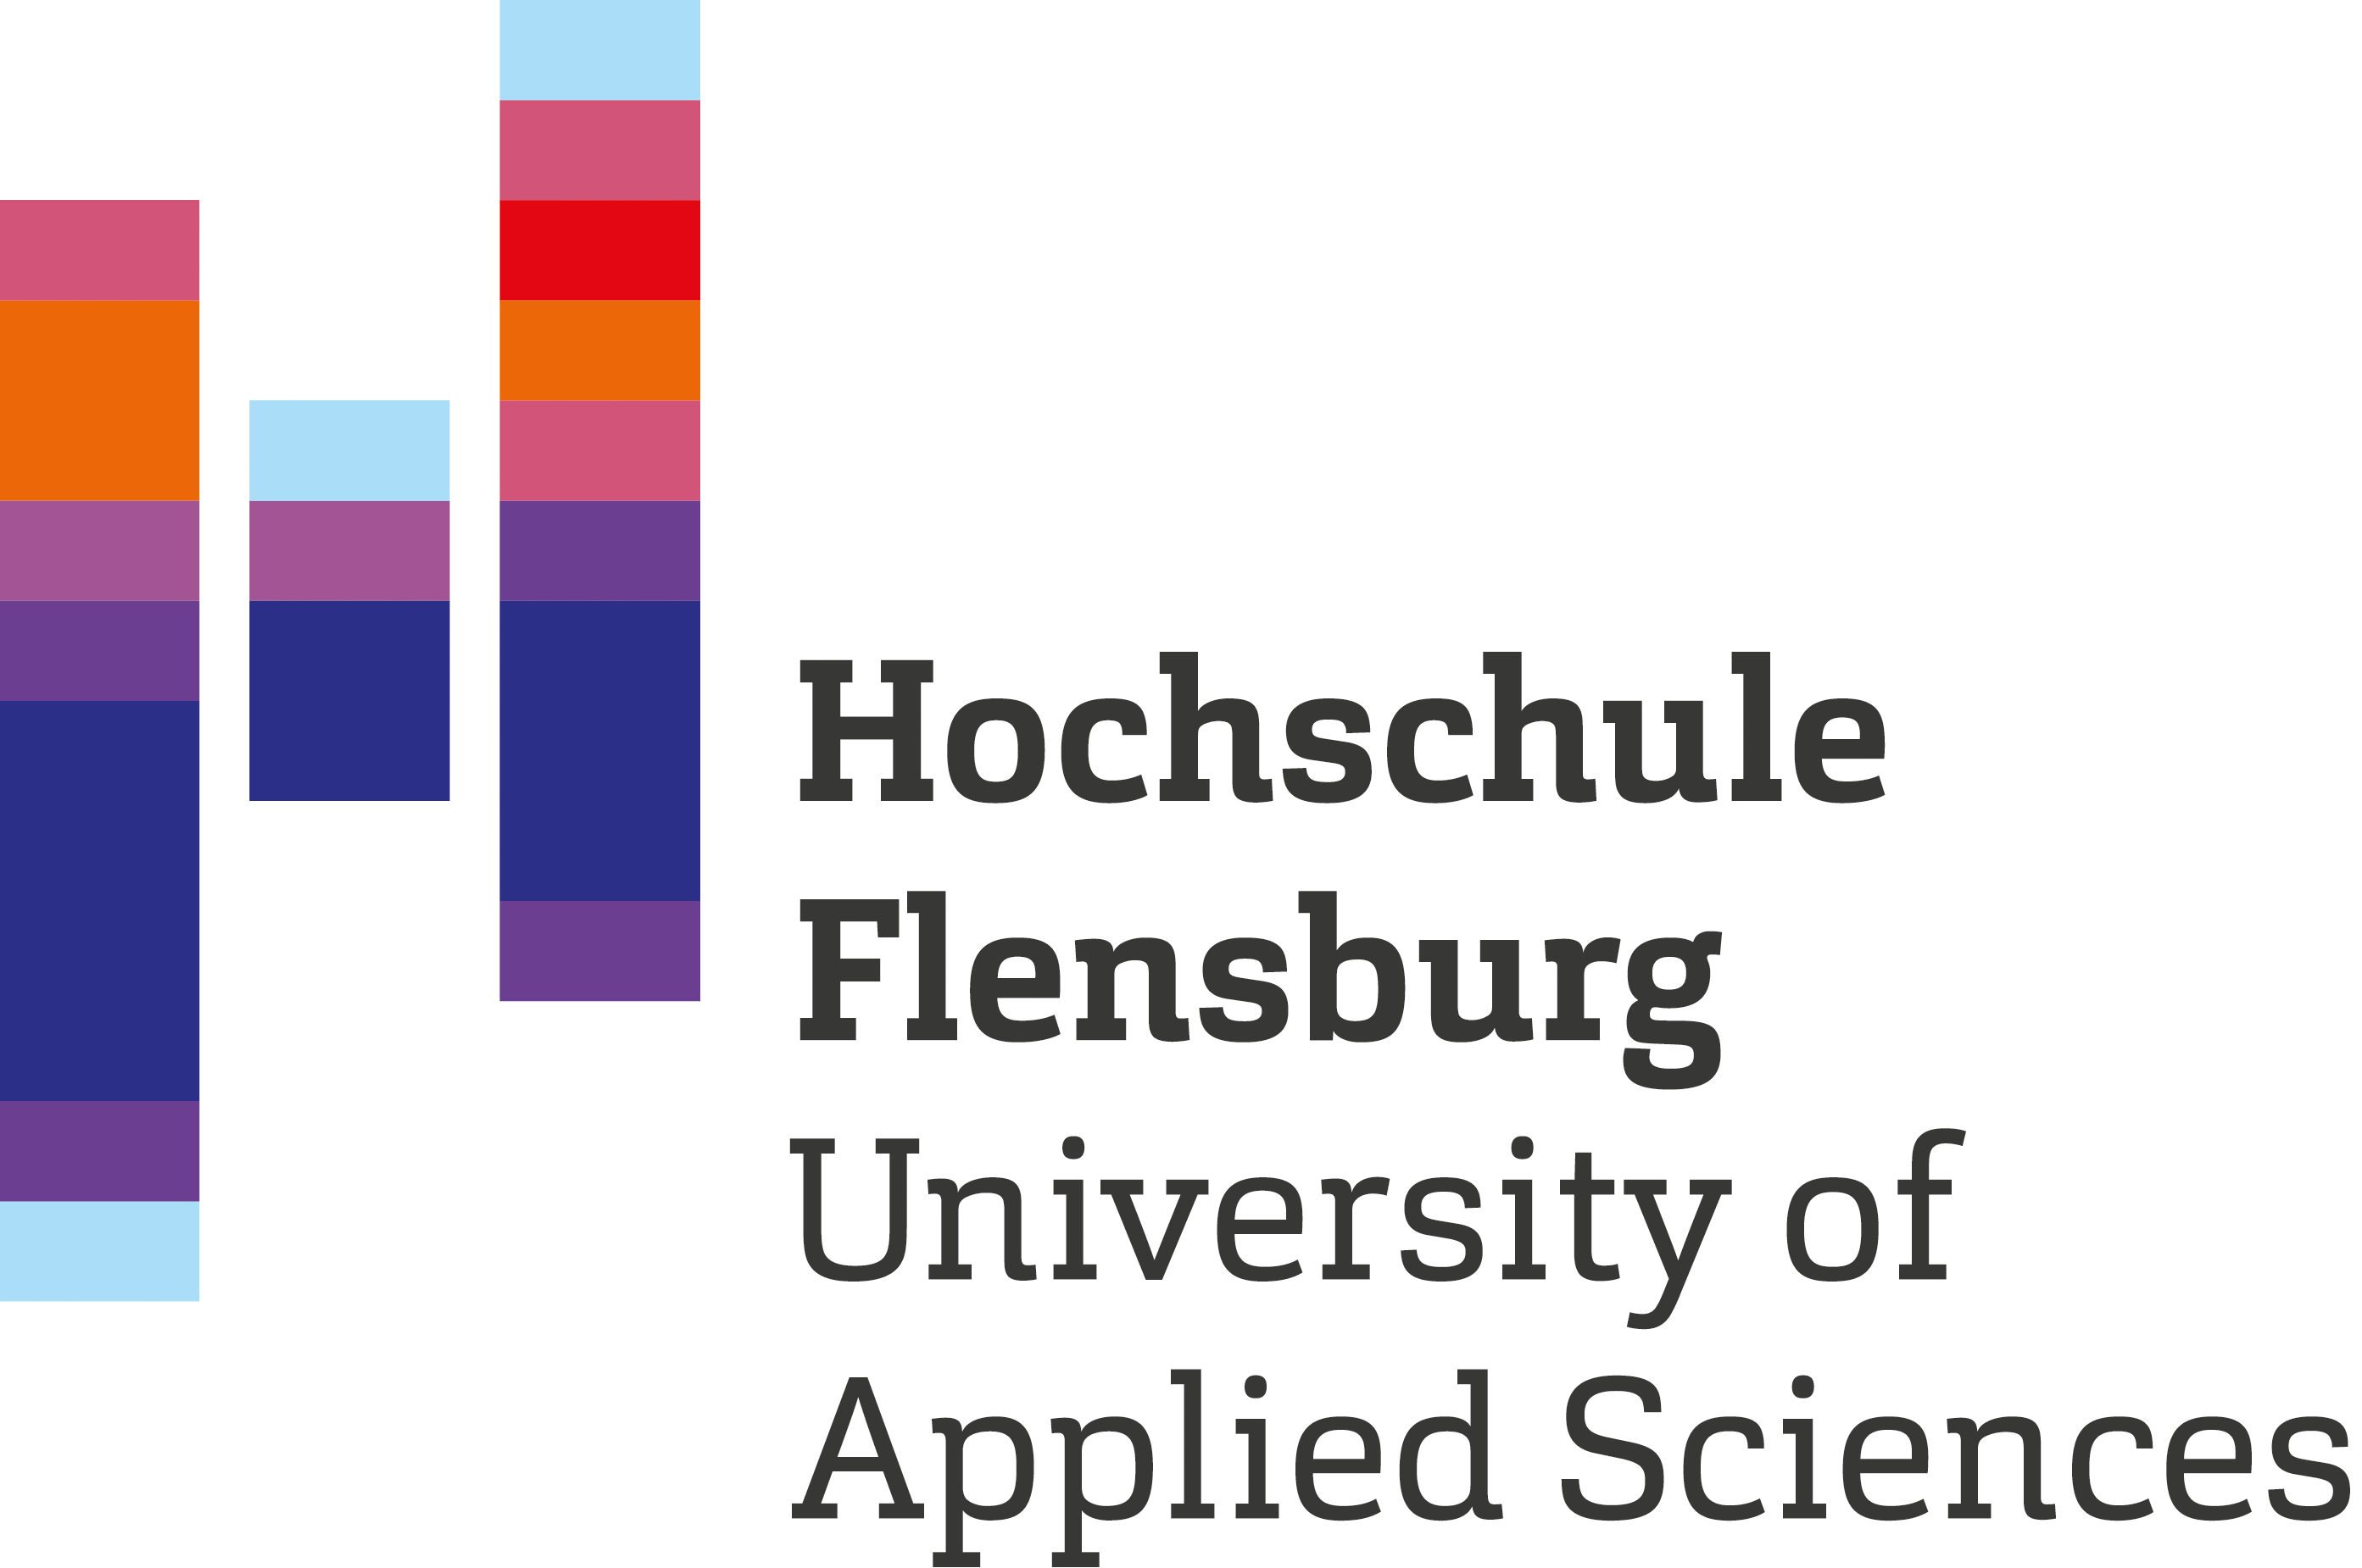 Hochschule Flensburg (Fachhochschule)